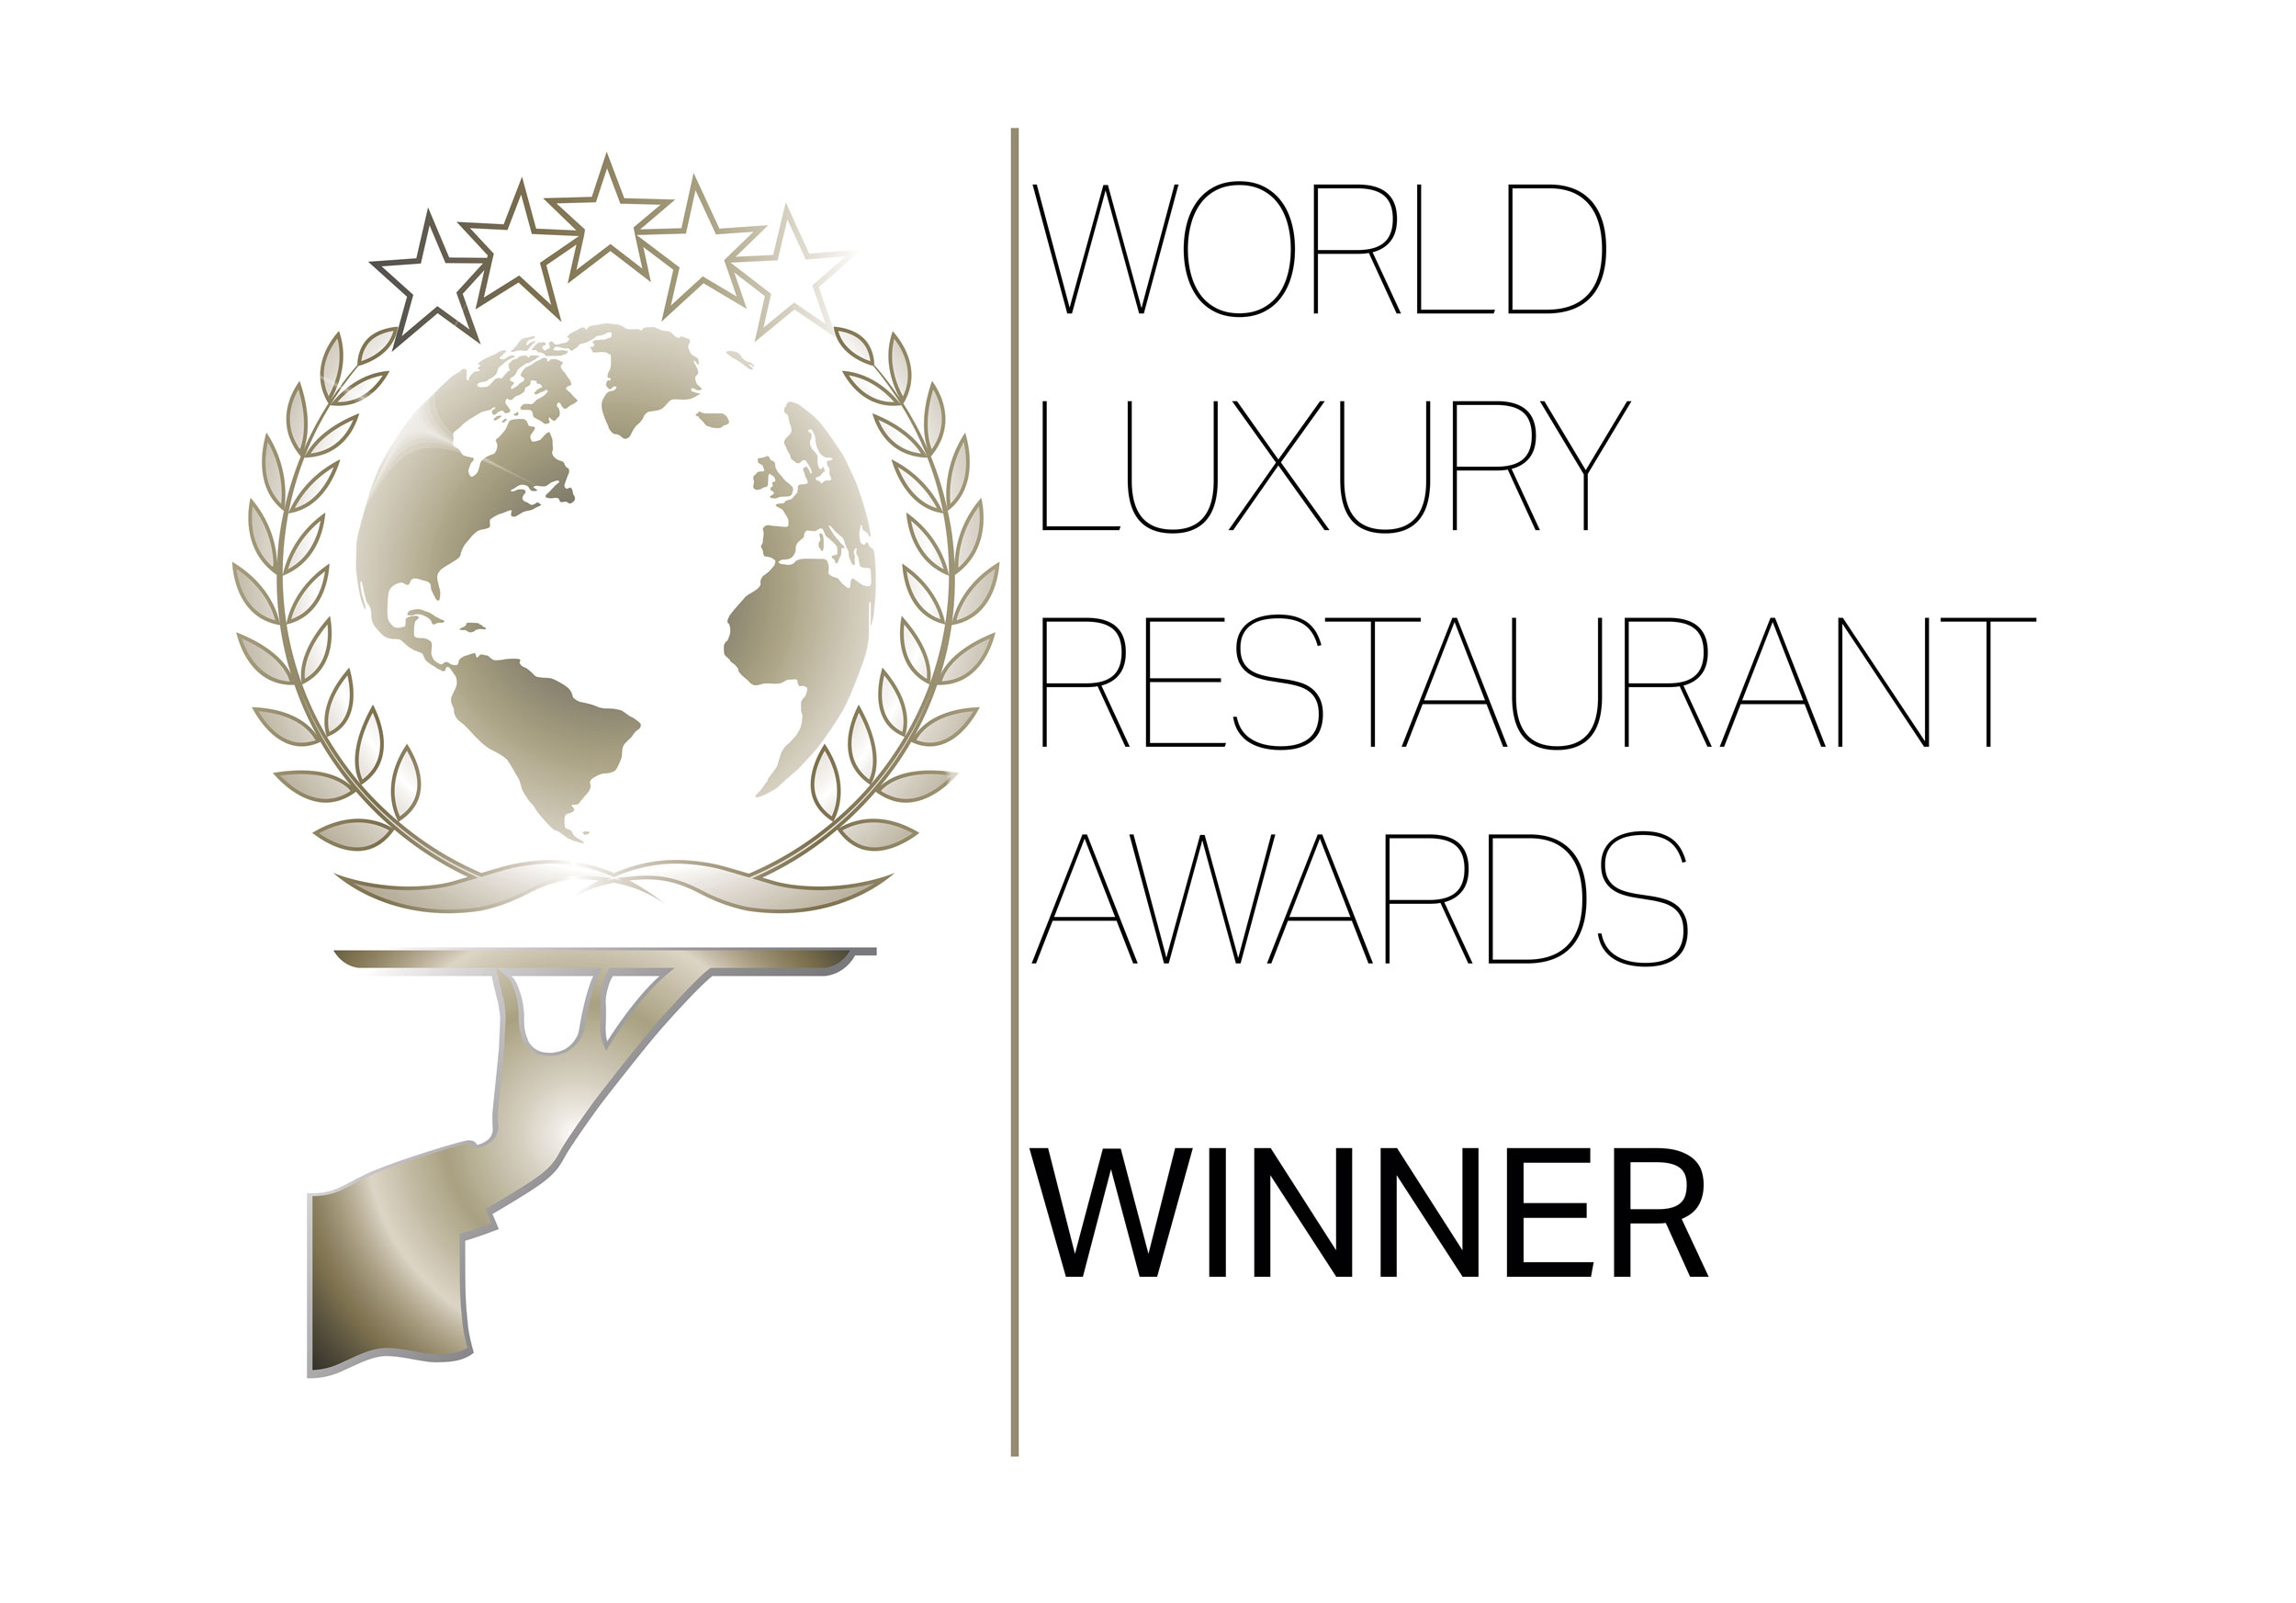 WORLD LUXURY RESTAURANT AWARDS - Winner for Greek Cuisine 2018